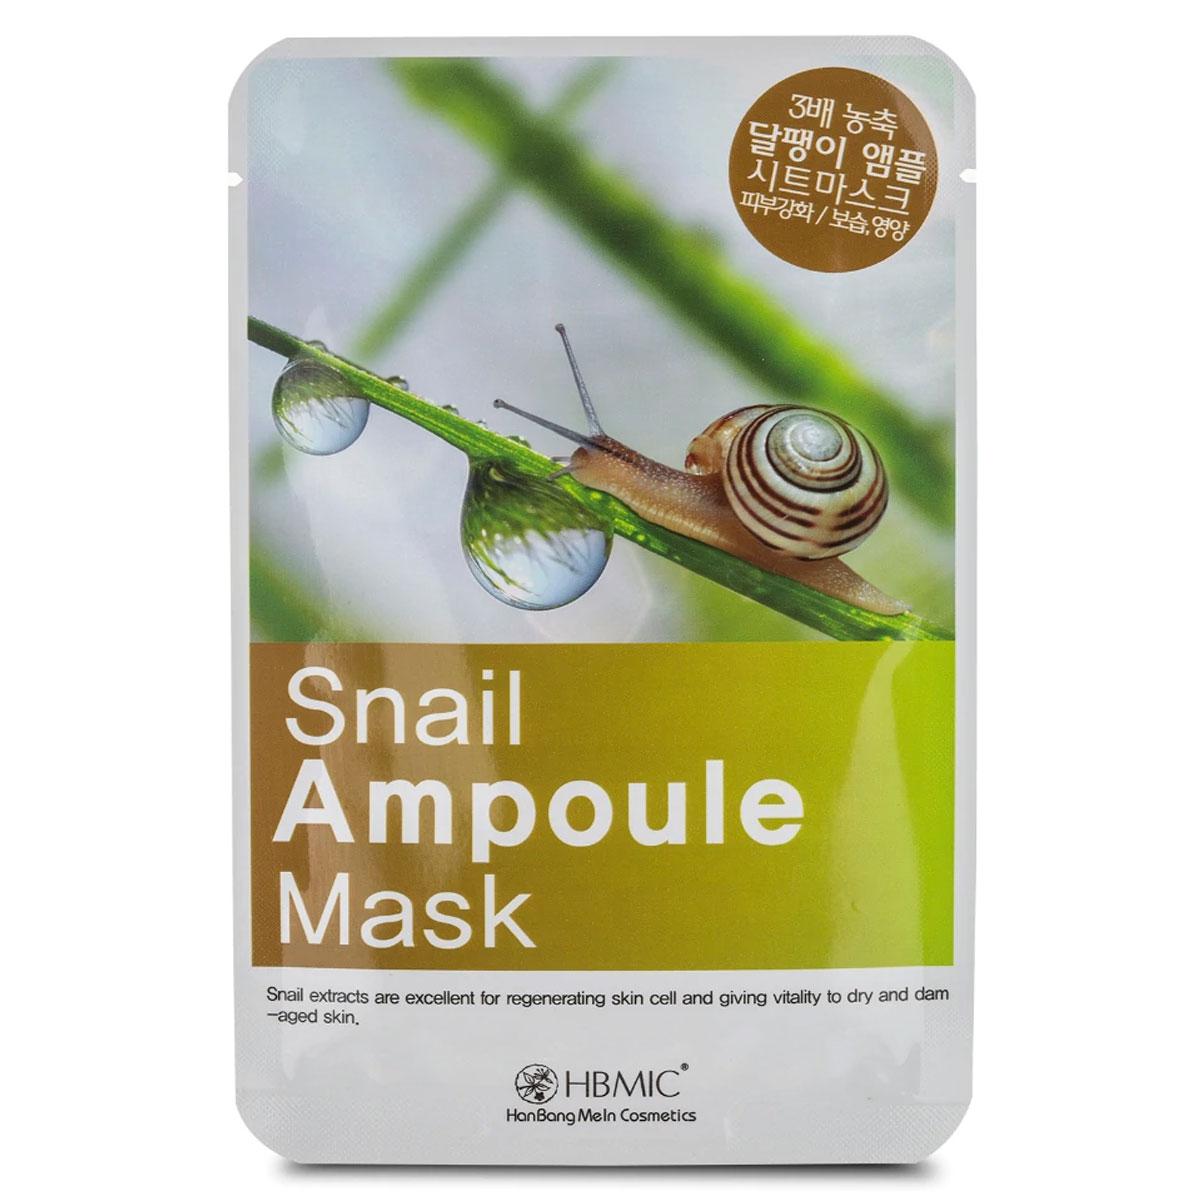 ماسک حلزون کره اى  - snail ampoule mask sheet